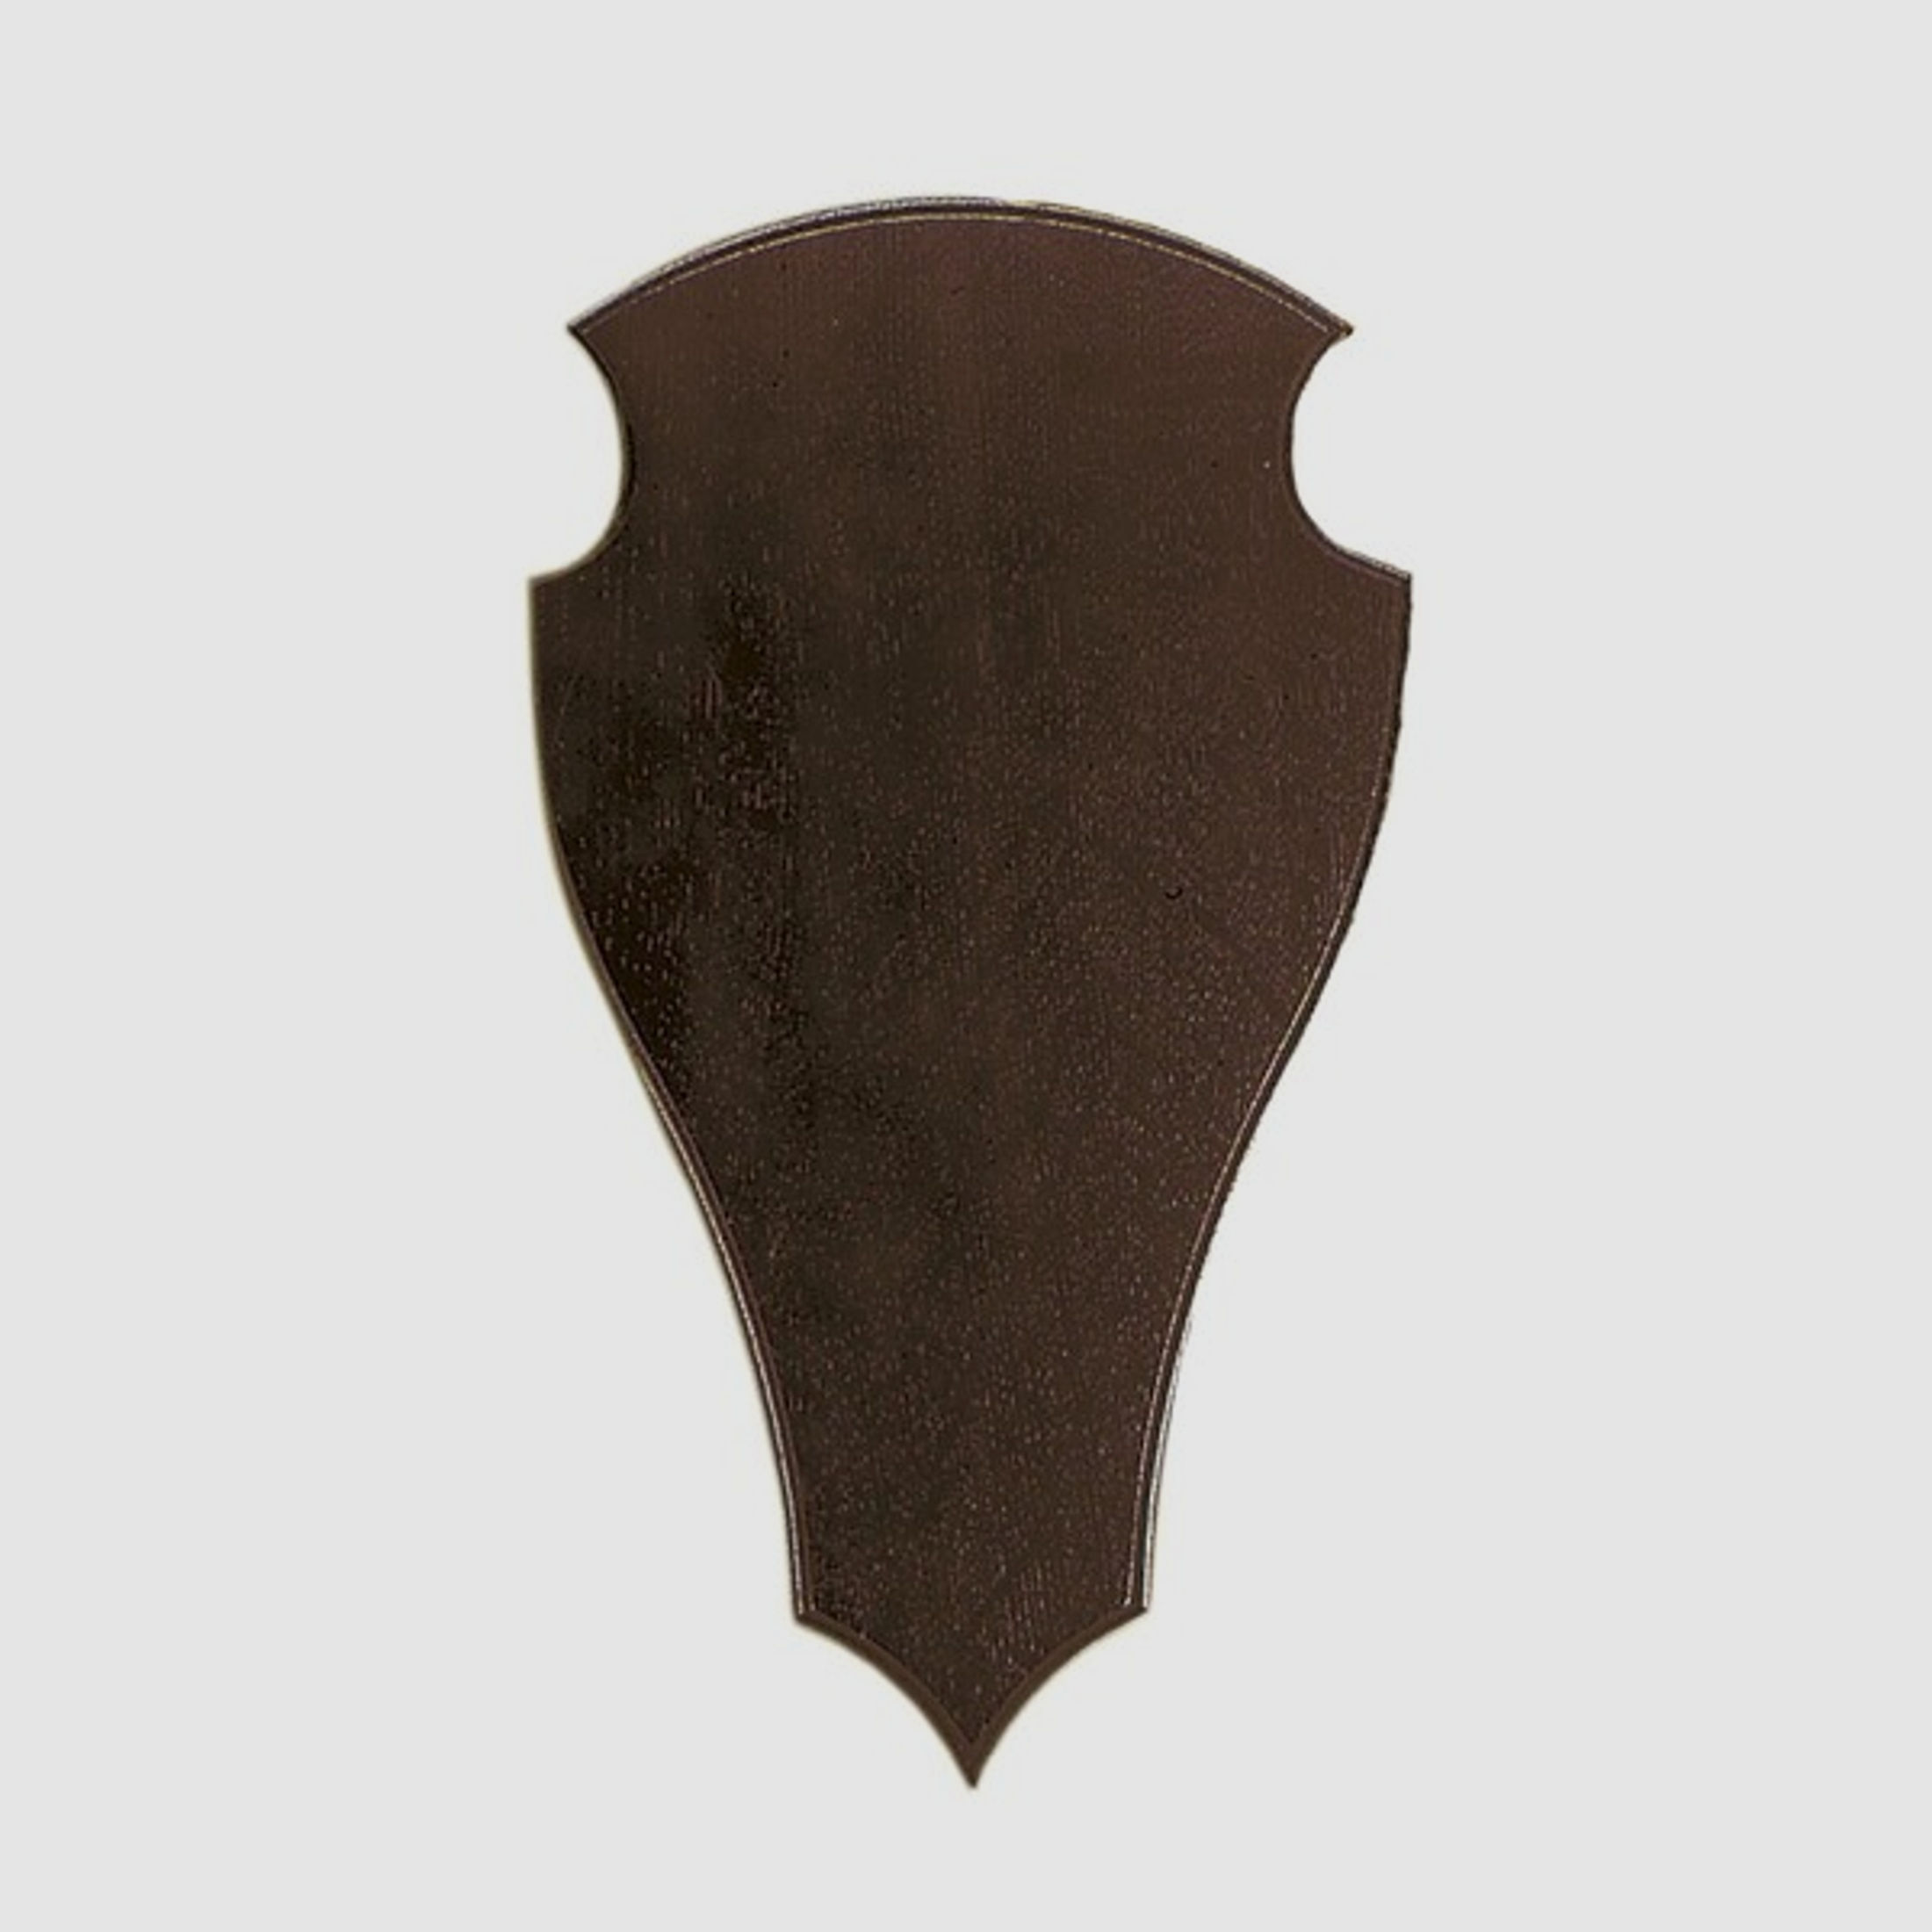 Trophäenschild Damhirsch, Eiche dunkel, Größe 28x17,5cm